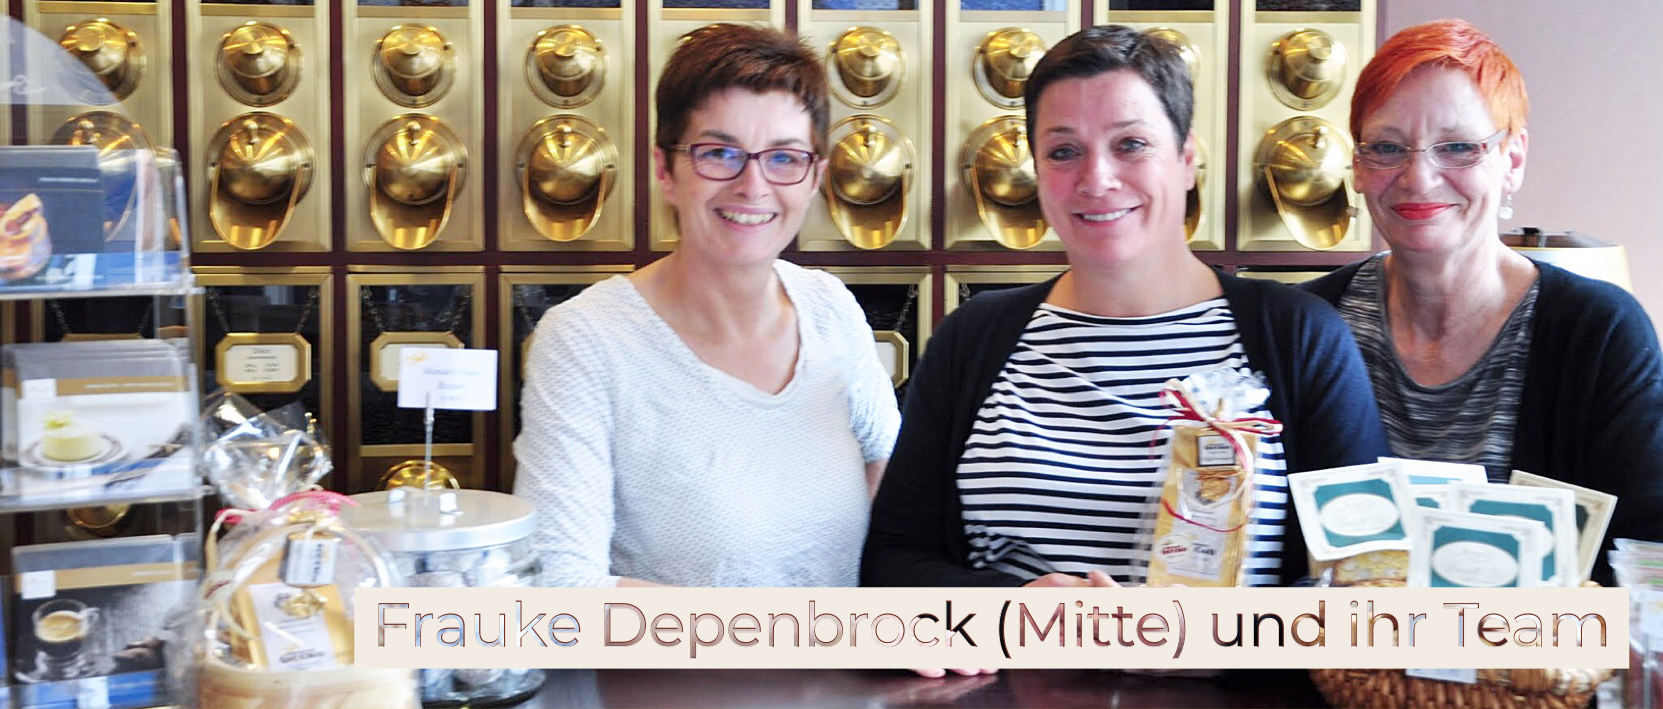 Frauke Depenbrock und ihr Team